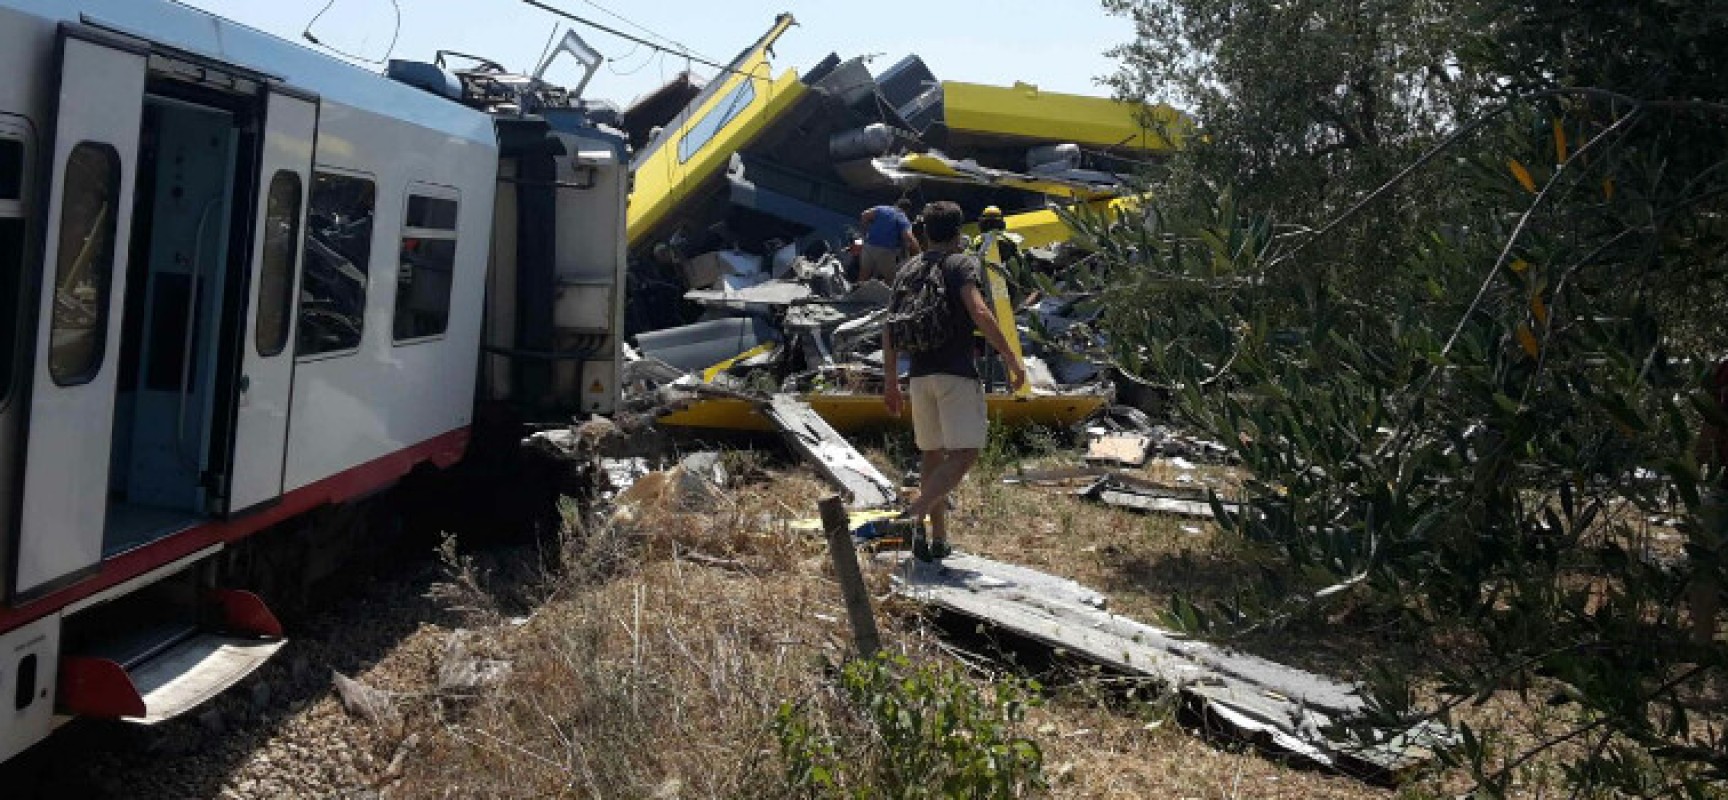 Tragedia ferroviaria Corato, la testimonianza di un soccorritore biscegliese: “Scenario apocalittico”